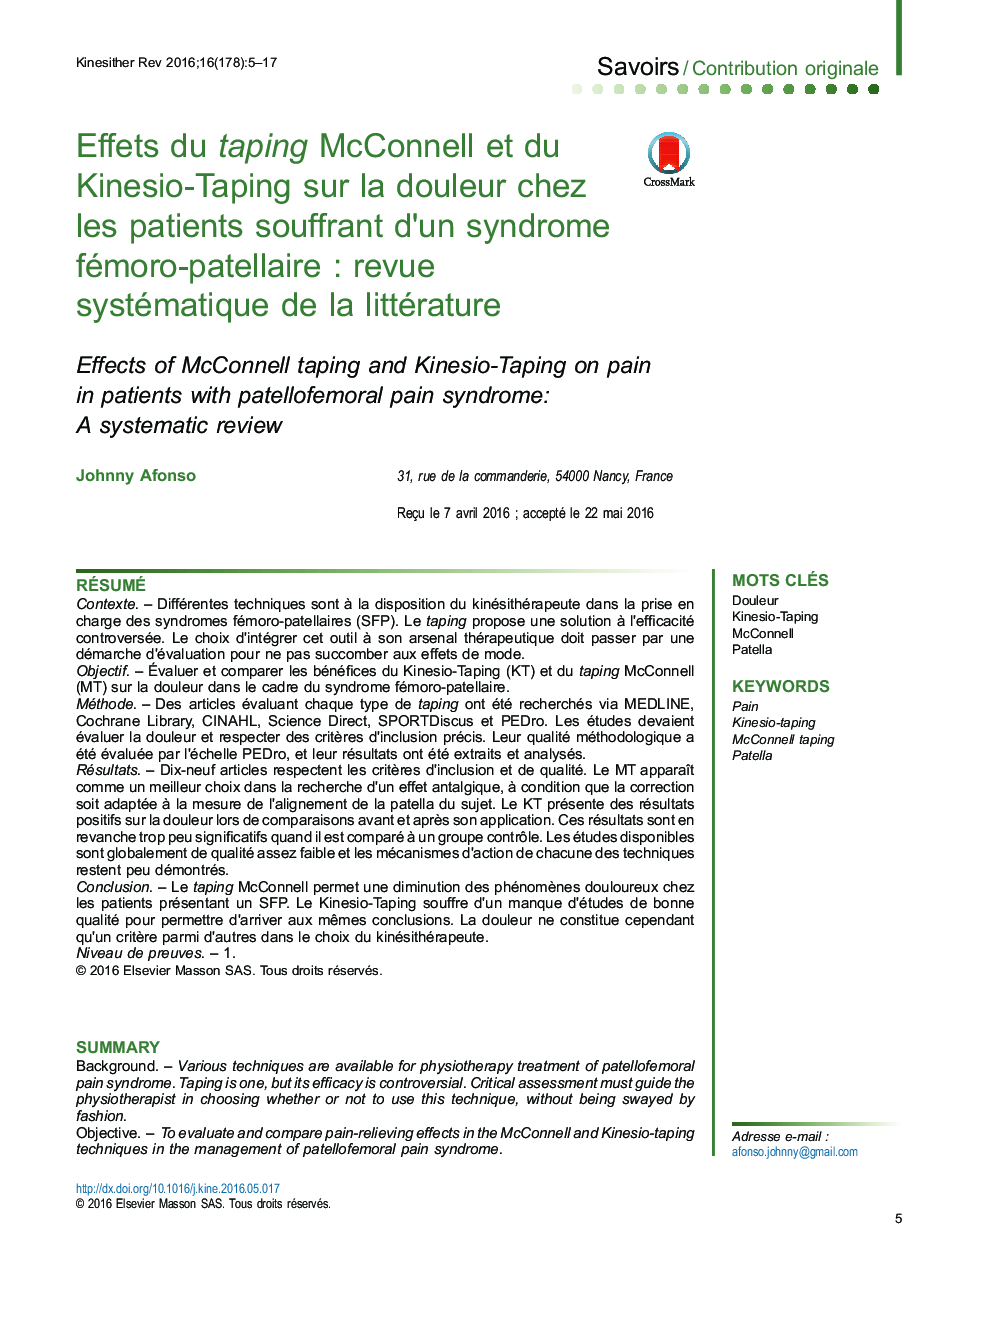 Effets du taping McConnell et du Kinesio-Taping sur la douleur chez les patients souffrant d'un syndrome fémoro-patellaireÂ : revue systématique de la littérature